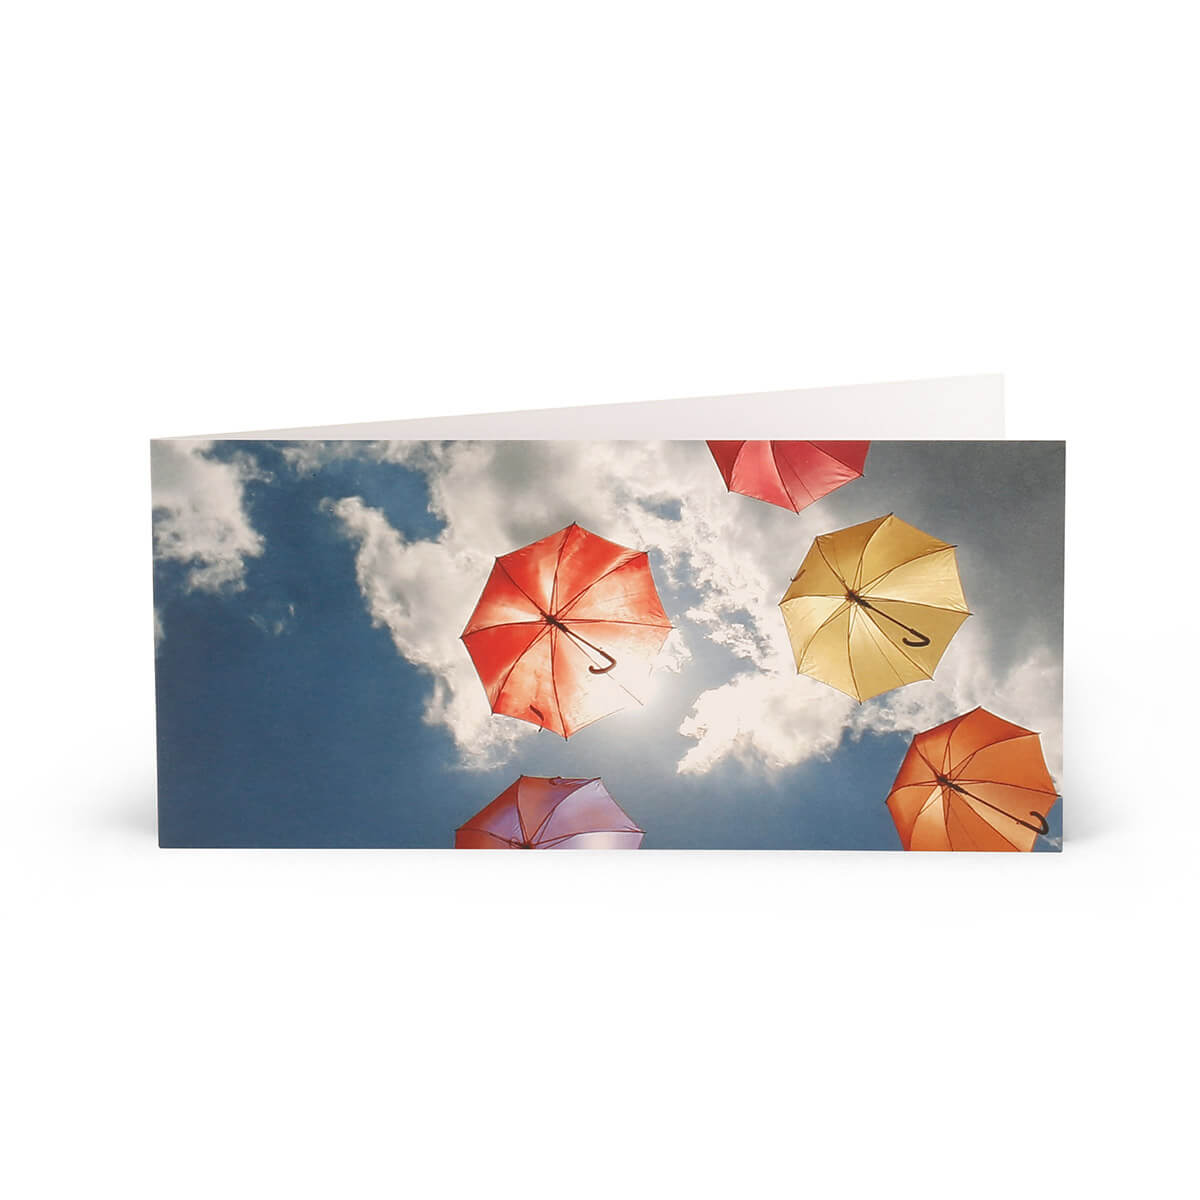 Brieflicht – Farbige Schirme